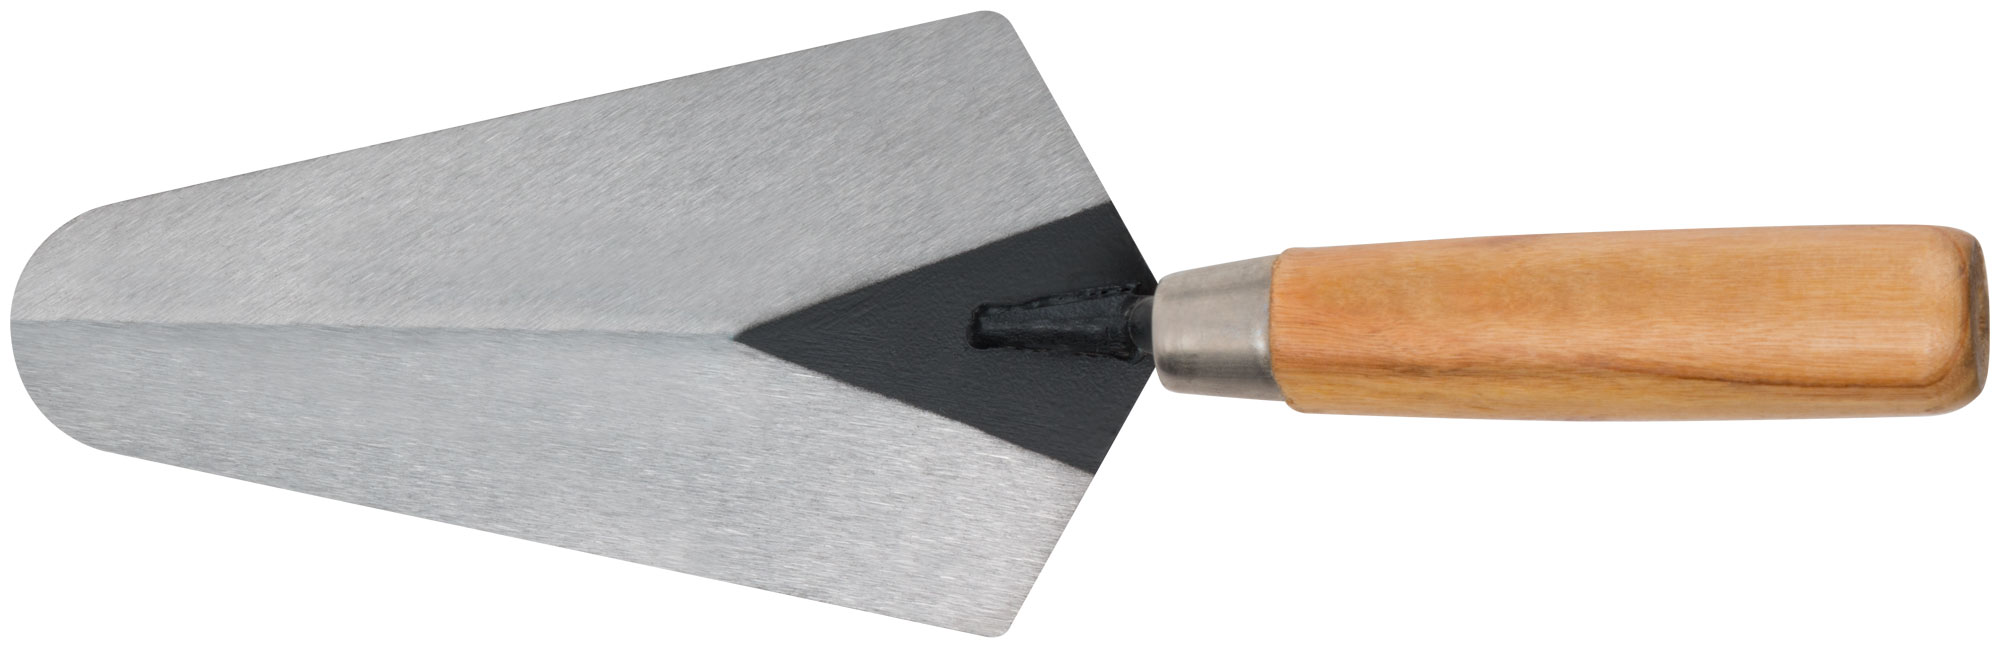 Кельма бетонщика, инструментальная сталь, деревянная ручка 180 мм